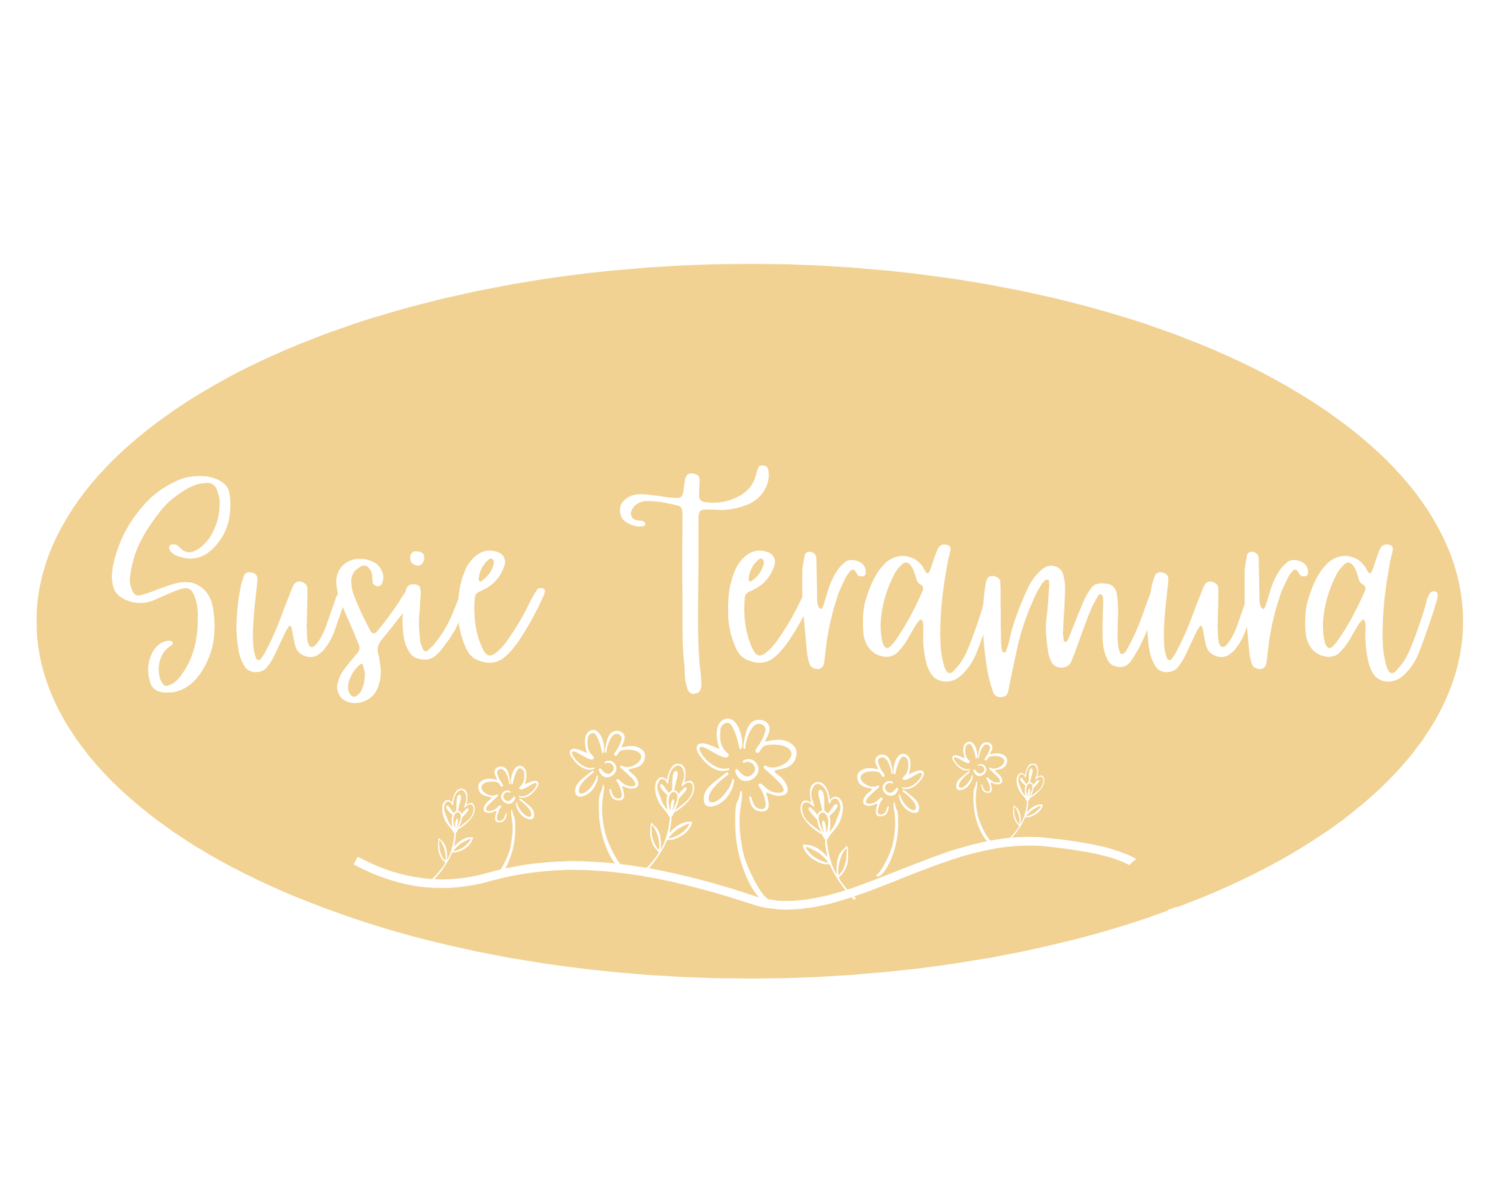 Susie Teramura